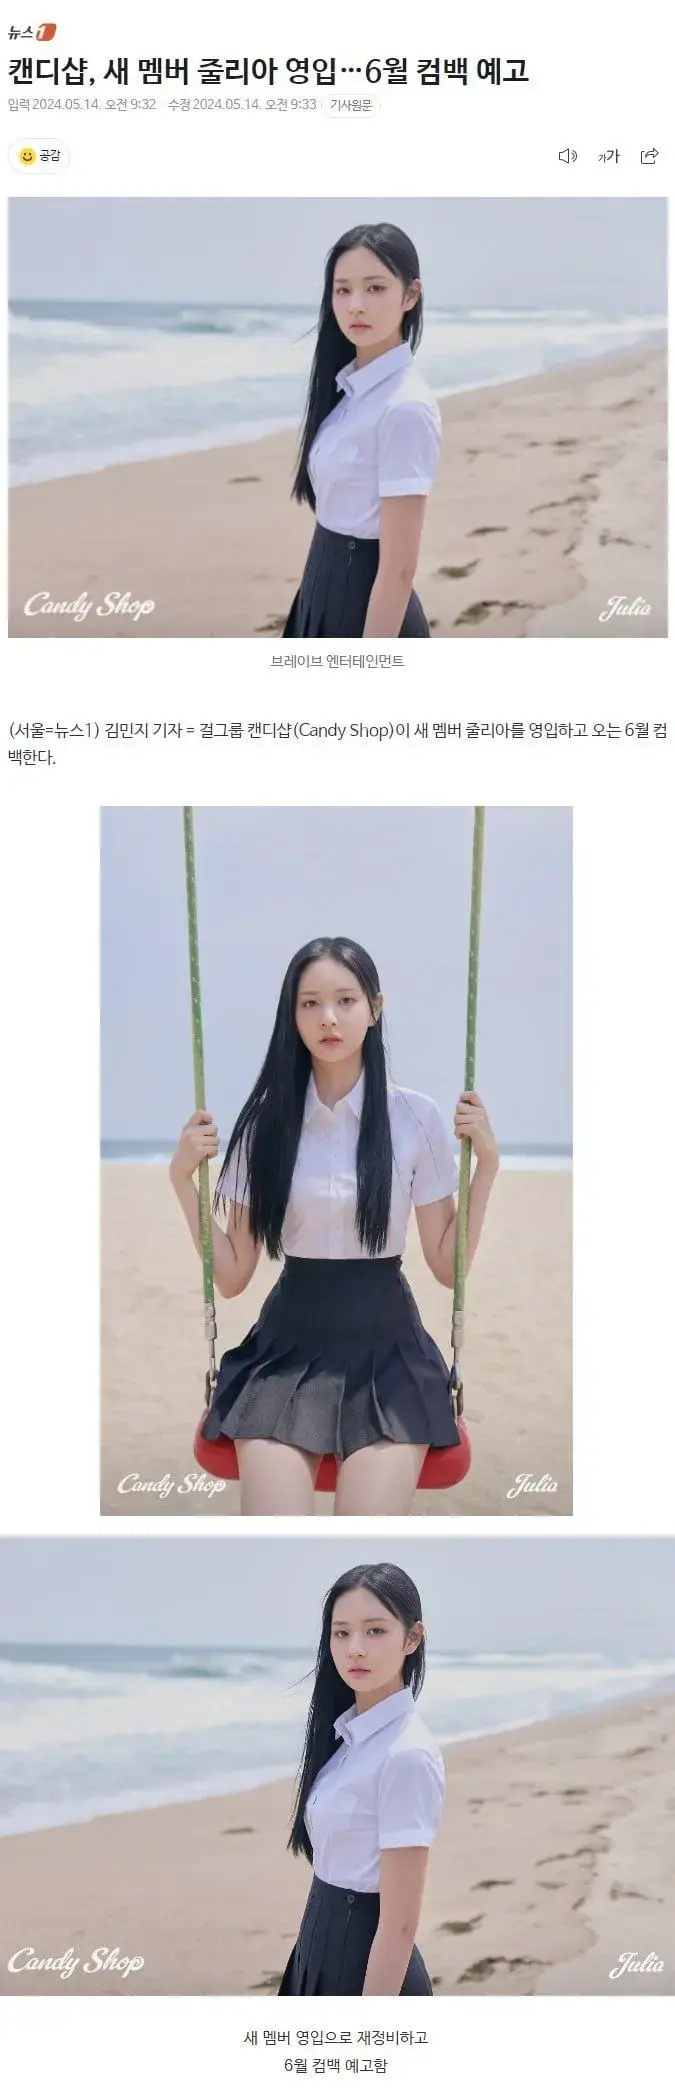 새 멤버 영입 소식 전한 용형네 걸그룹 캔디샵 | mbong.kr 엠봉